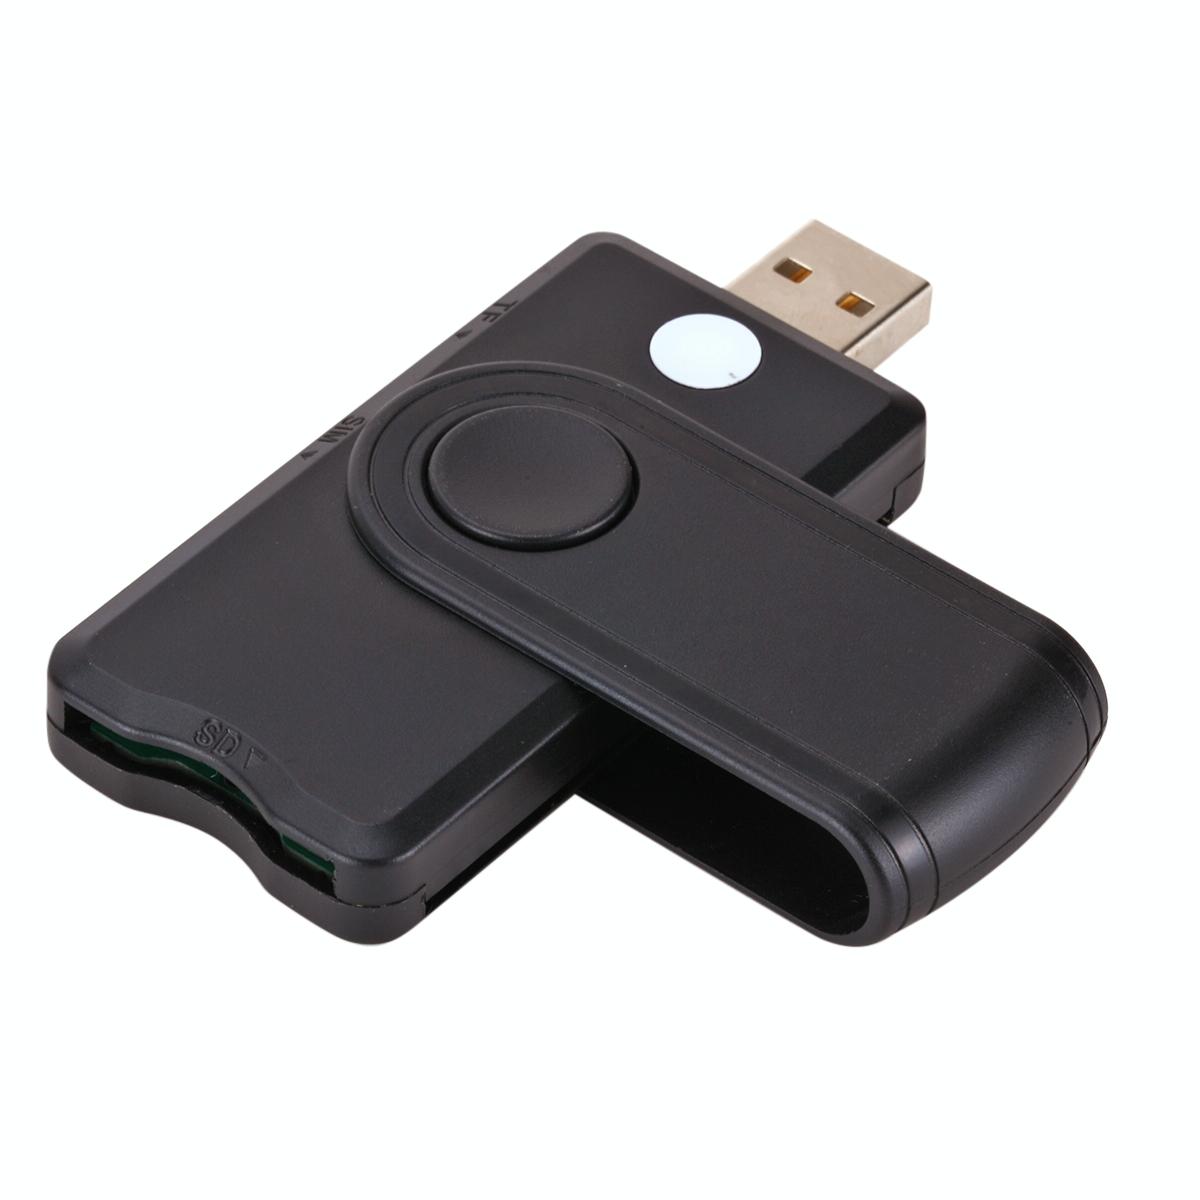 USB 2.0 Smart Card Reader